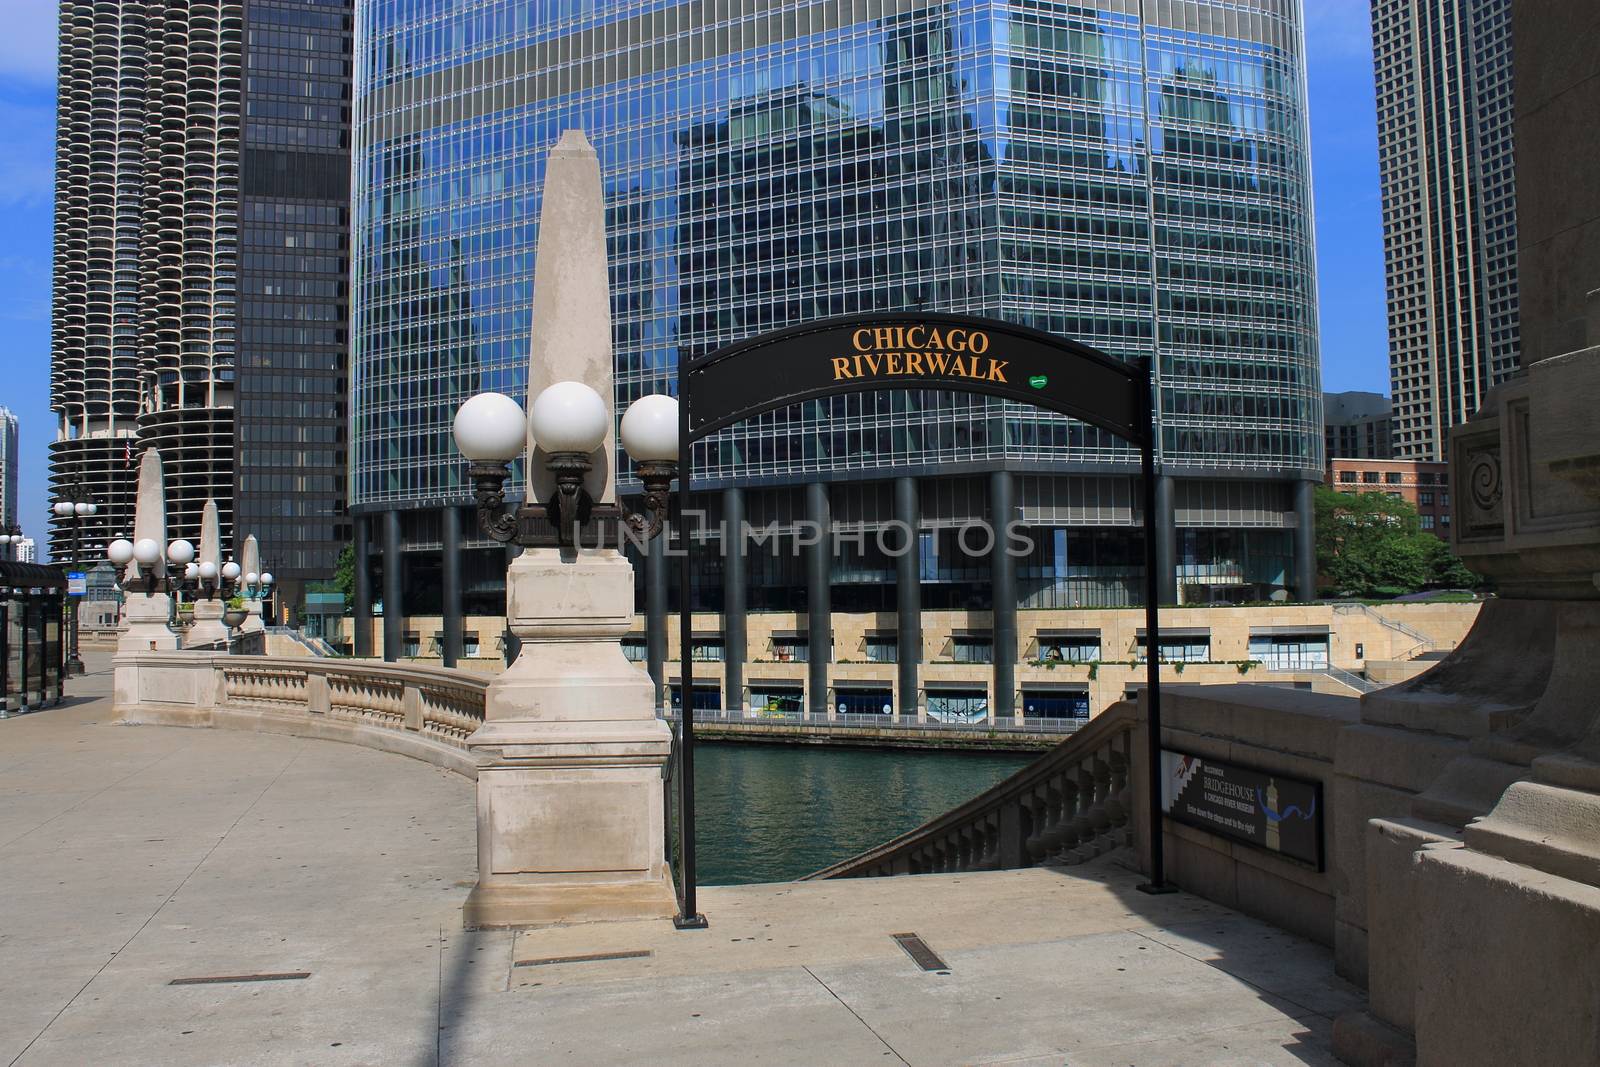 Chicago Riverwalk by Ffooter